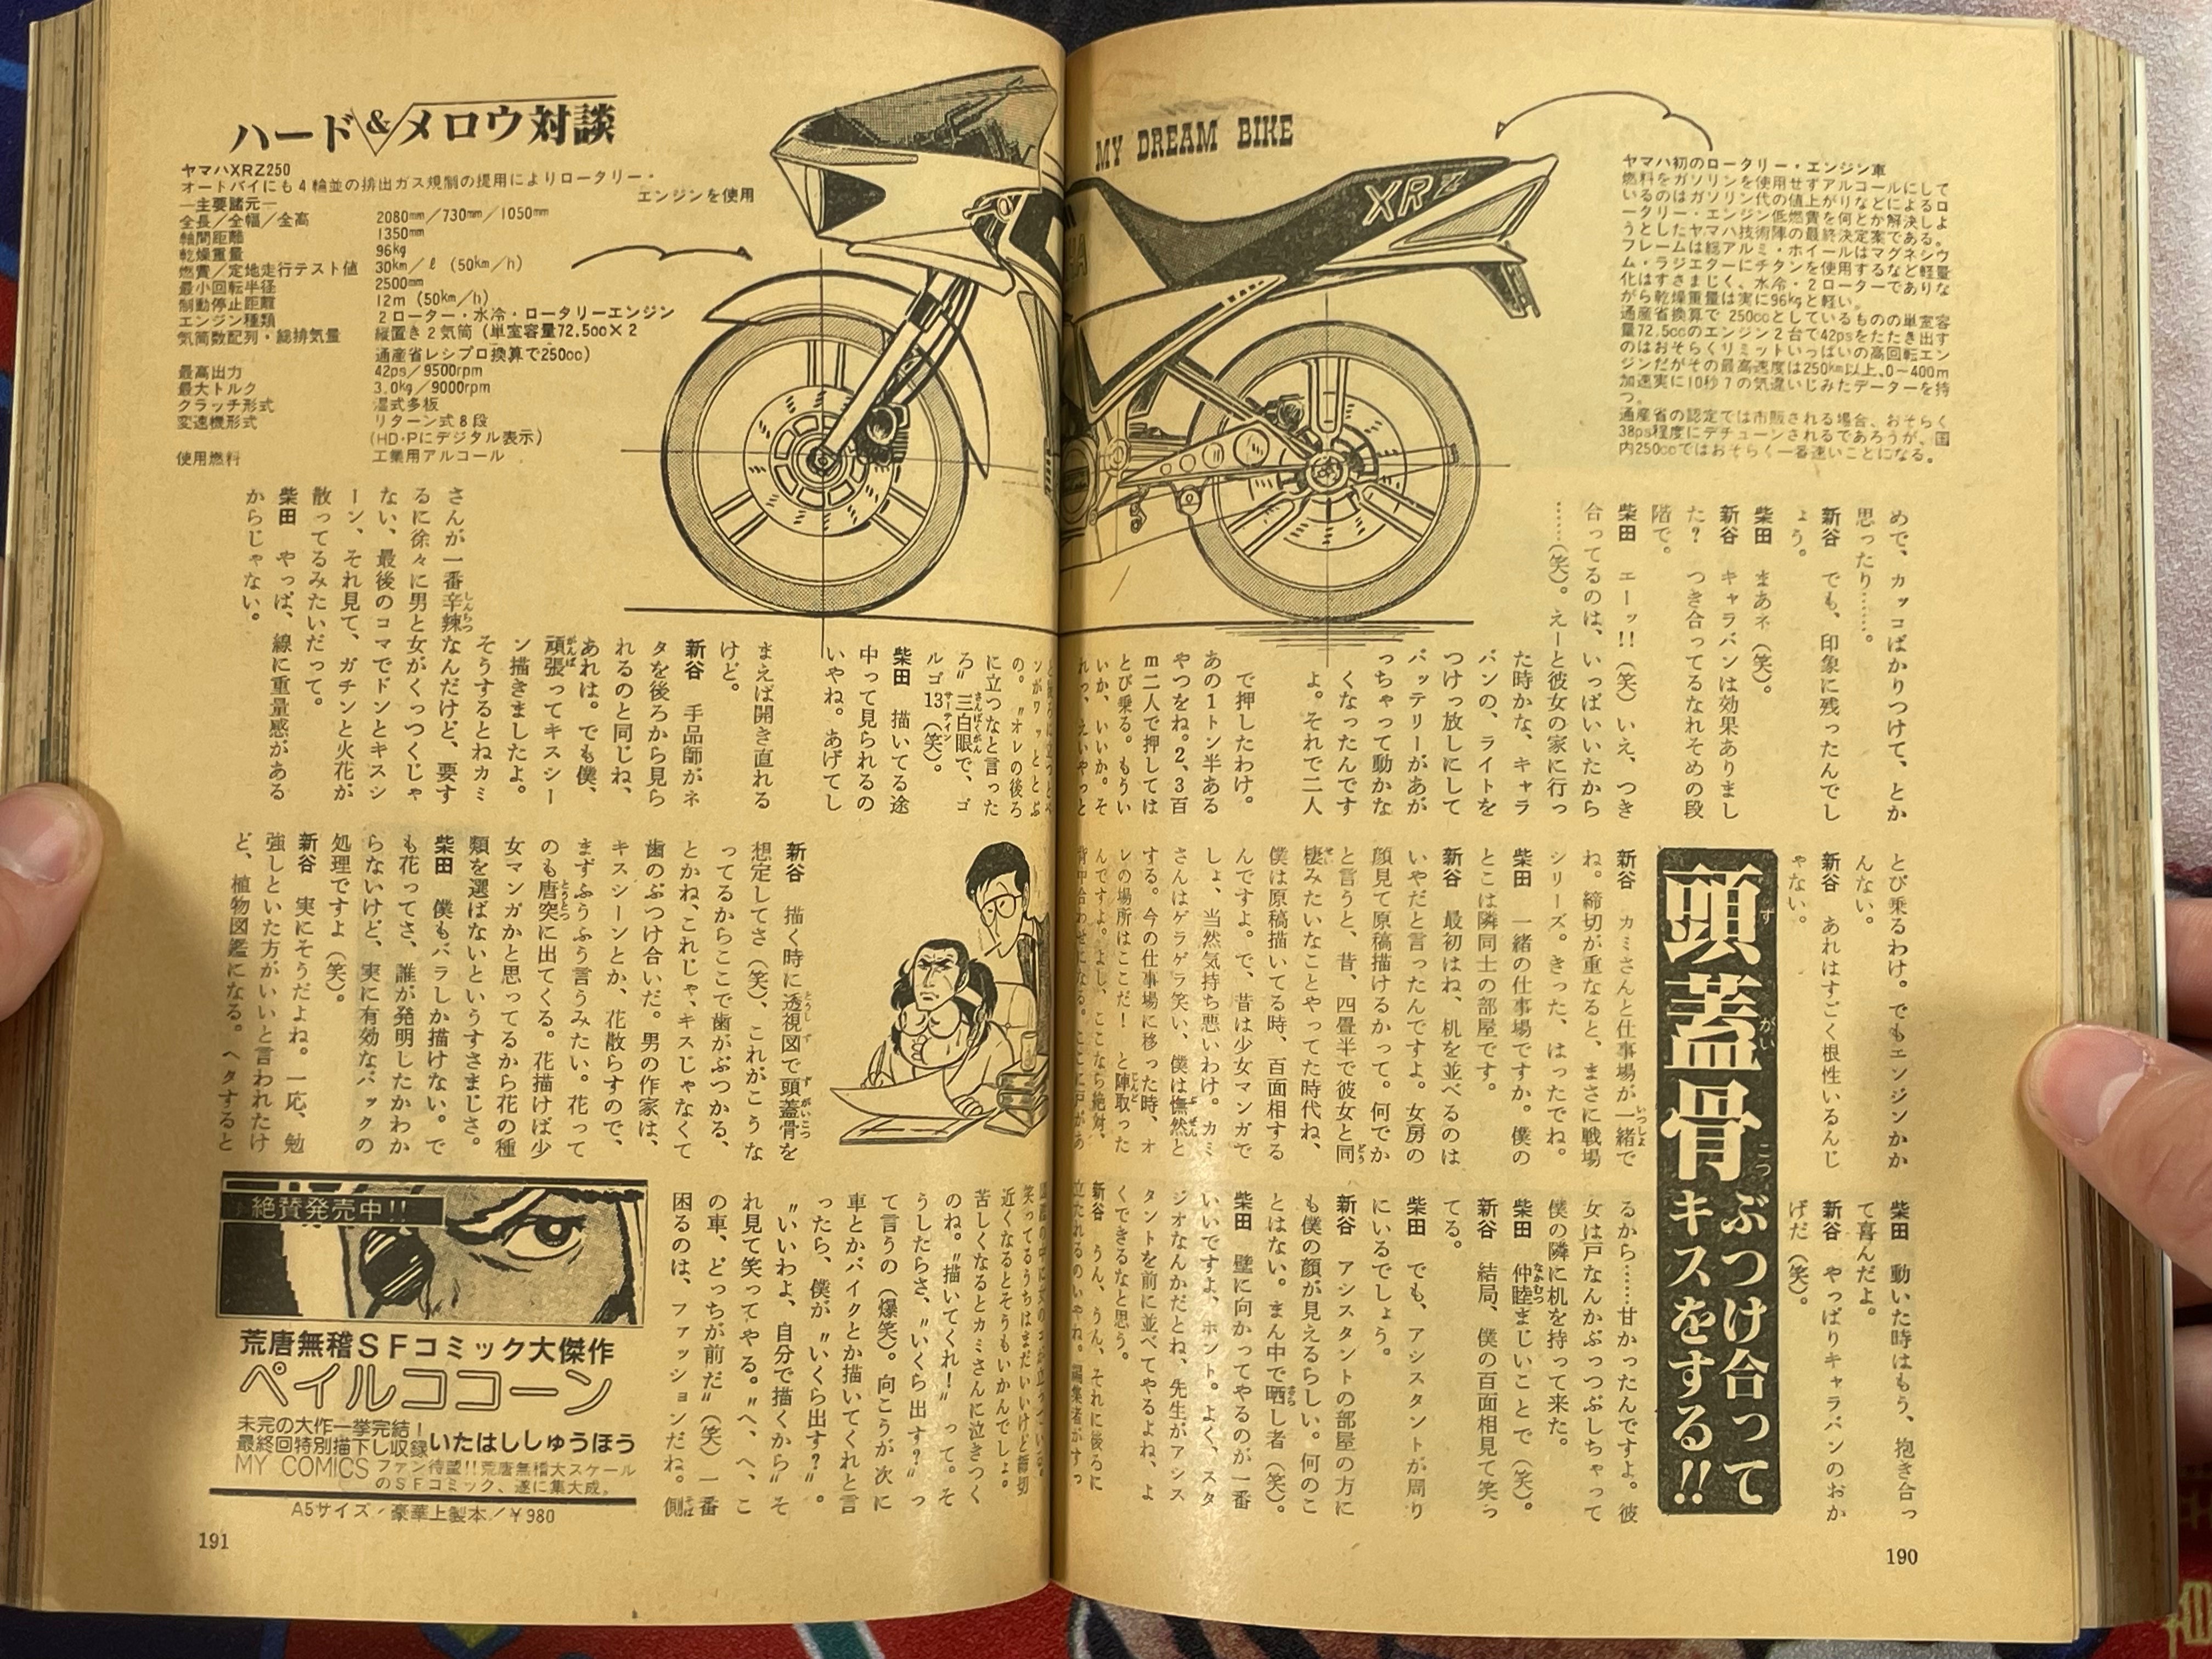 SF Manga Kyosaku Big Collection Magazine Part 10 - 4/1981